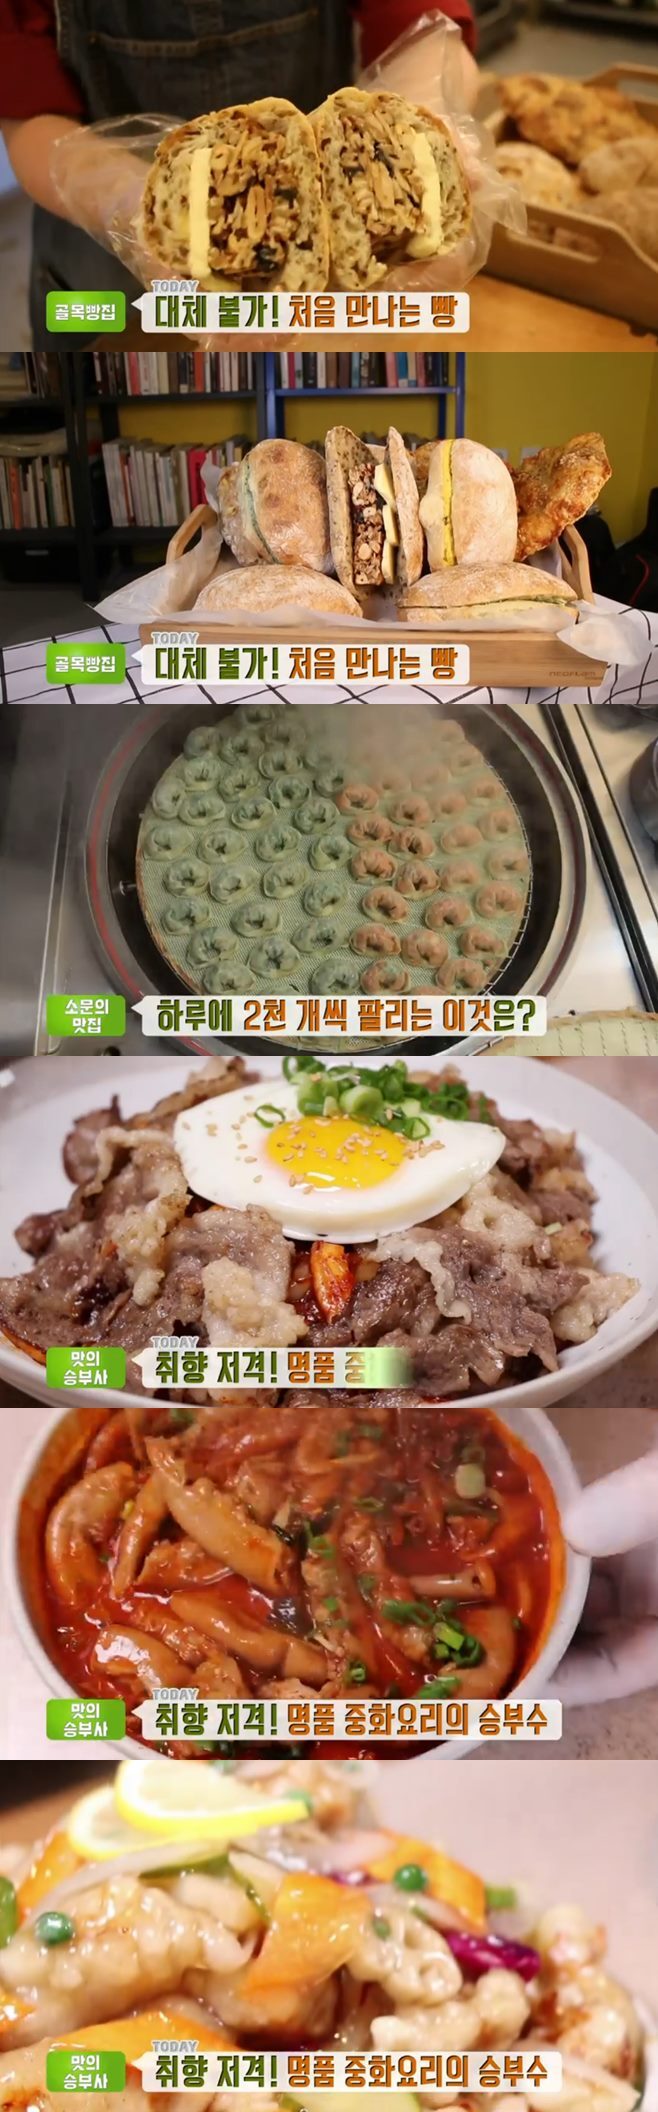 ‘생방송투데이’ 맛의승부사 짬뽕(낙원관)+치아바타(츄이구이브레드)+찐만두(광장스넥) 맛집